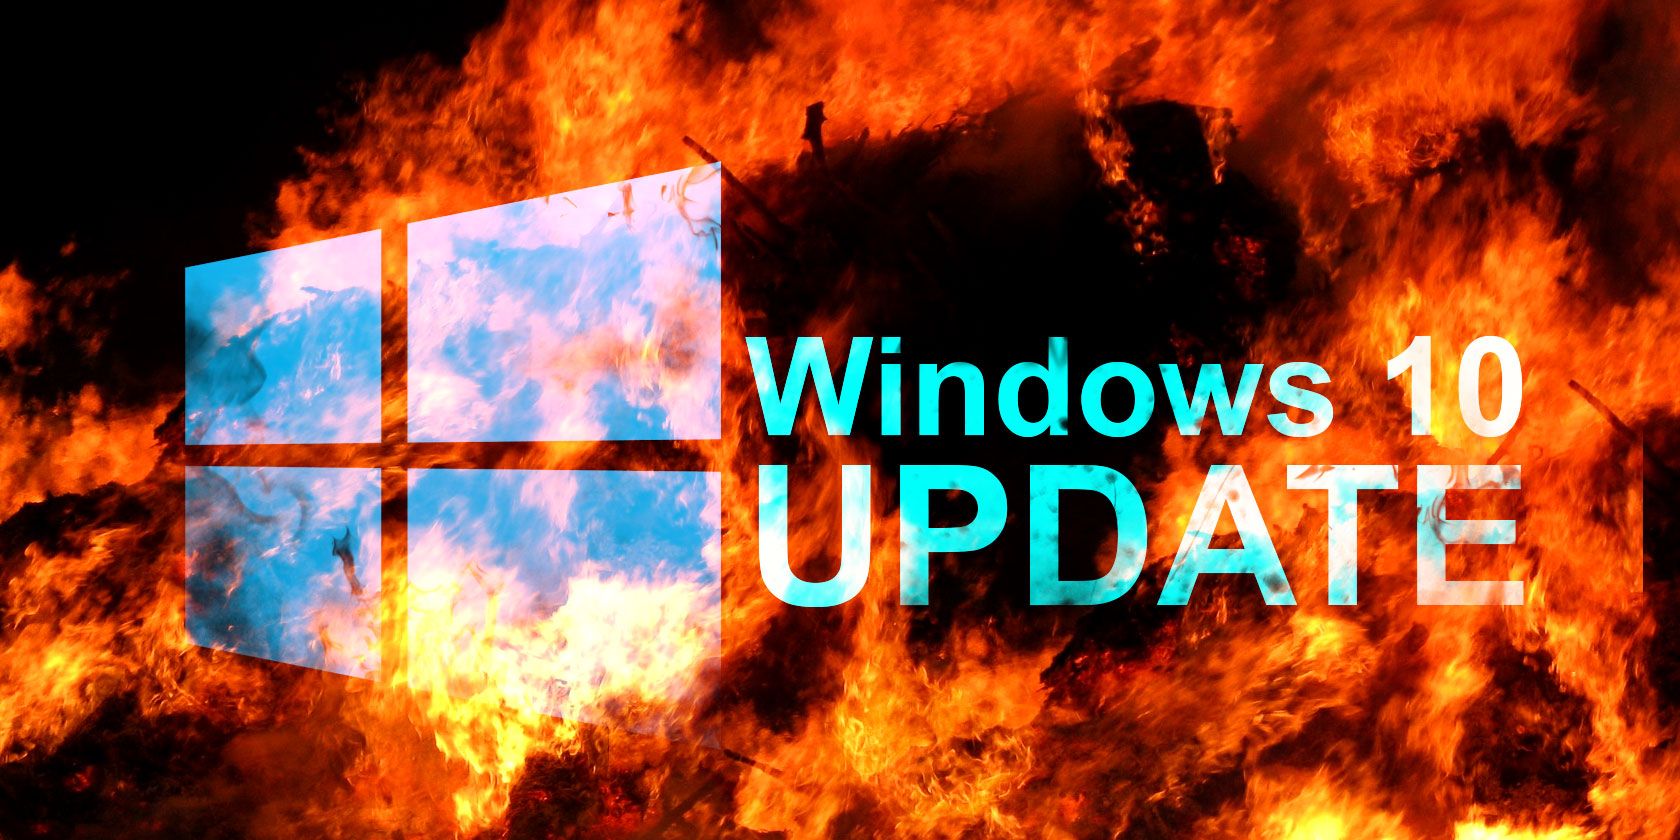 windows 10 microsoft edge update ruined my computer